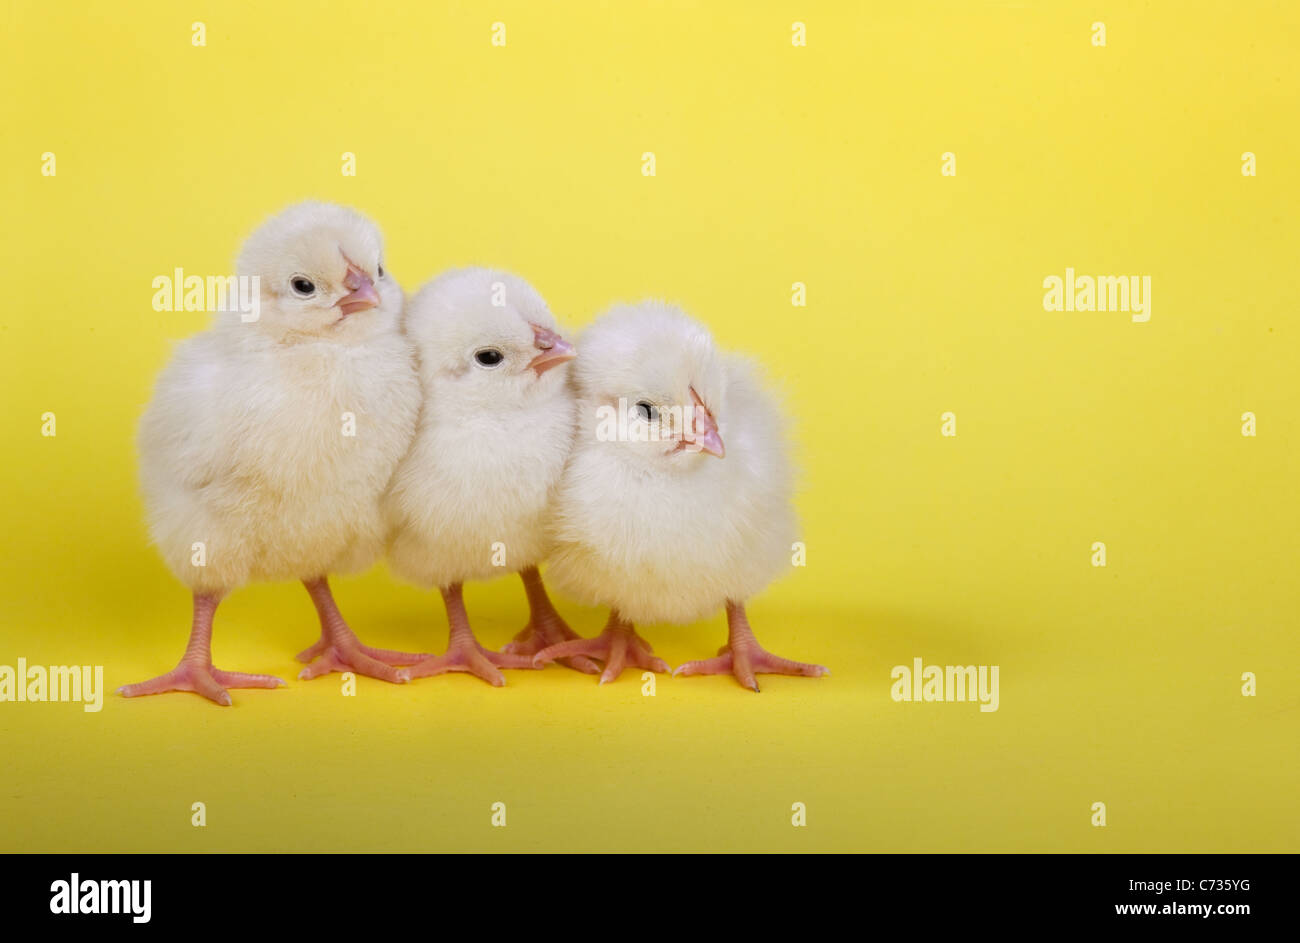 Tres polluelos recién nacidos en una fila sobre fondo amarillo Foto de stock